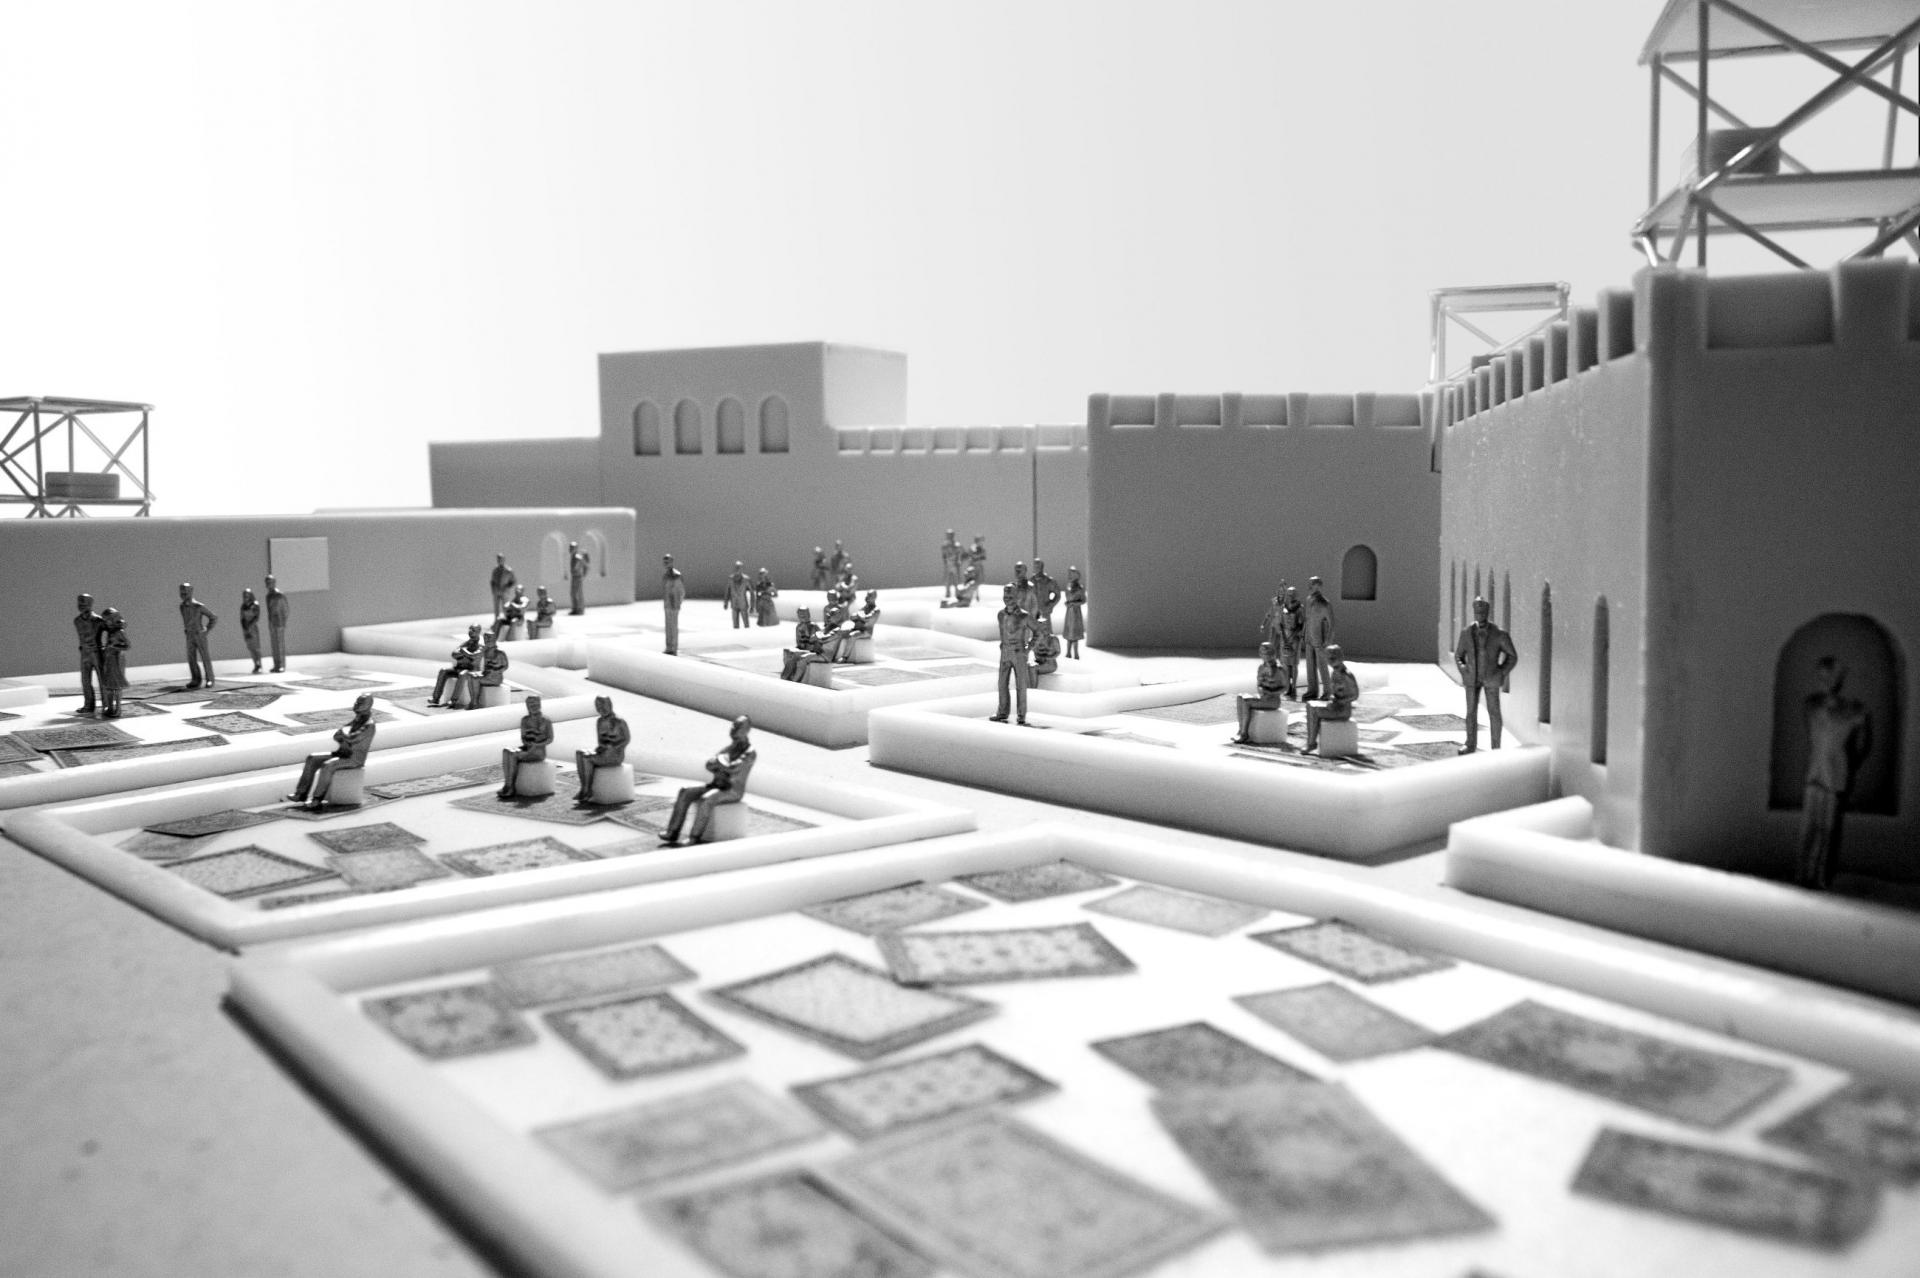 Посетители на 3D схеме открытого кинотеатра в Шардже